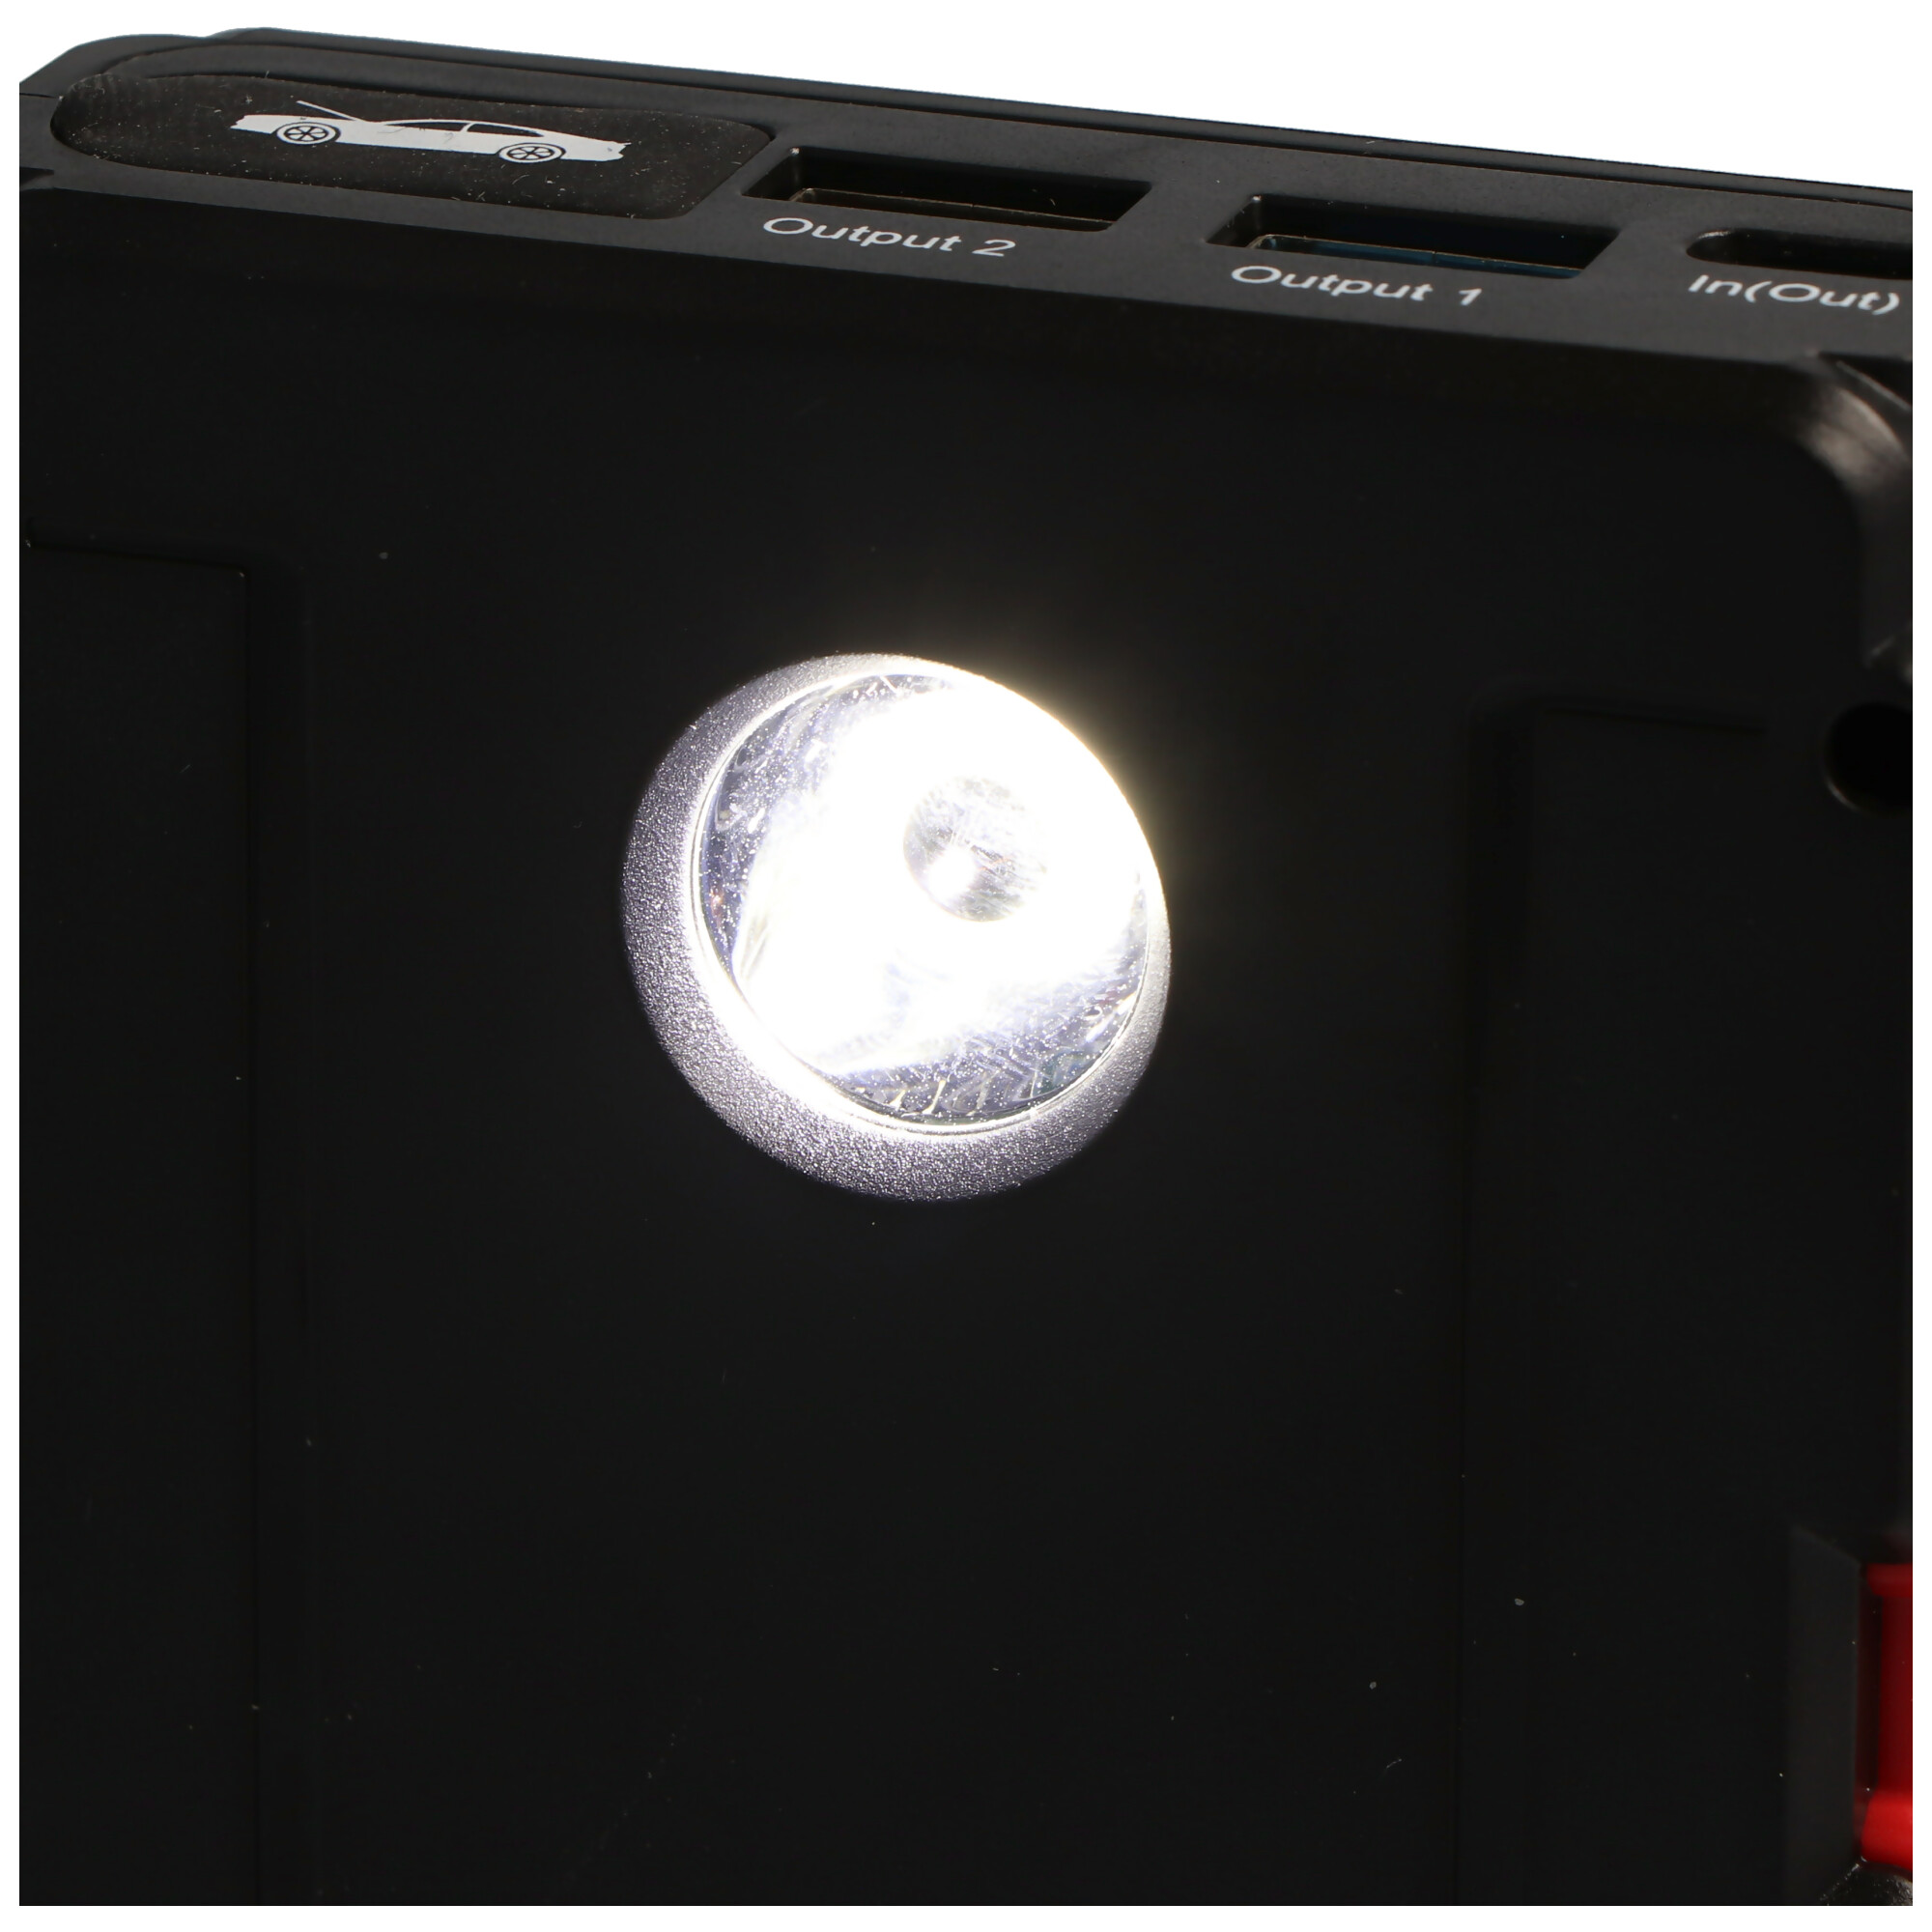 Jumpstarter, der kompakte KFZ-Starthilfe-Powerakku mit Powerbank- und LED-Taschenlampenfunktion